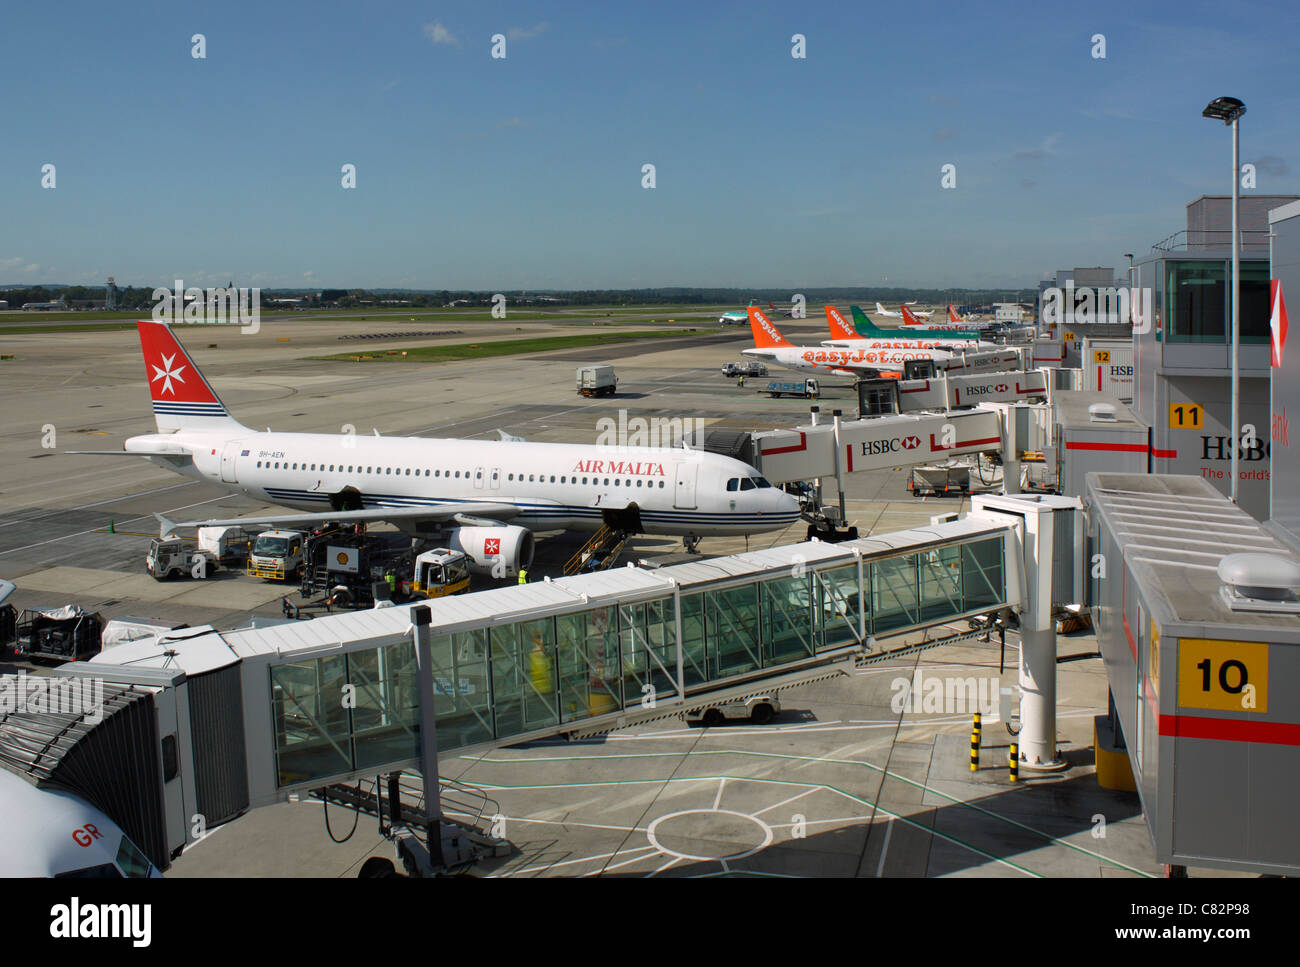 De nombreux avions stationnés au sol à l'aéroport de Gatwick. Transport aérien des avions à réaction Banque D'Images